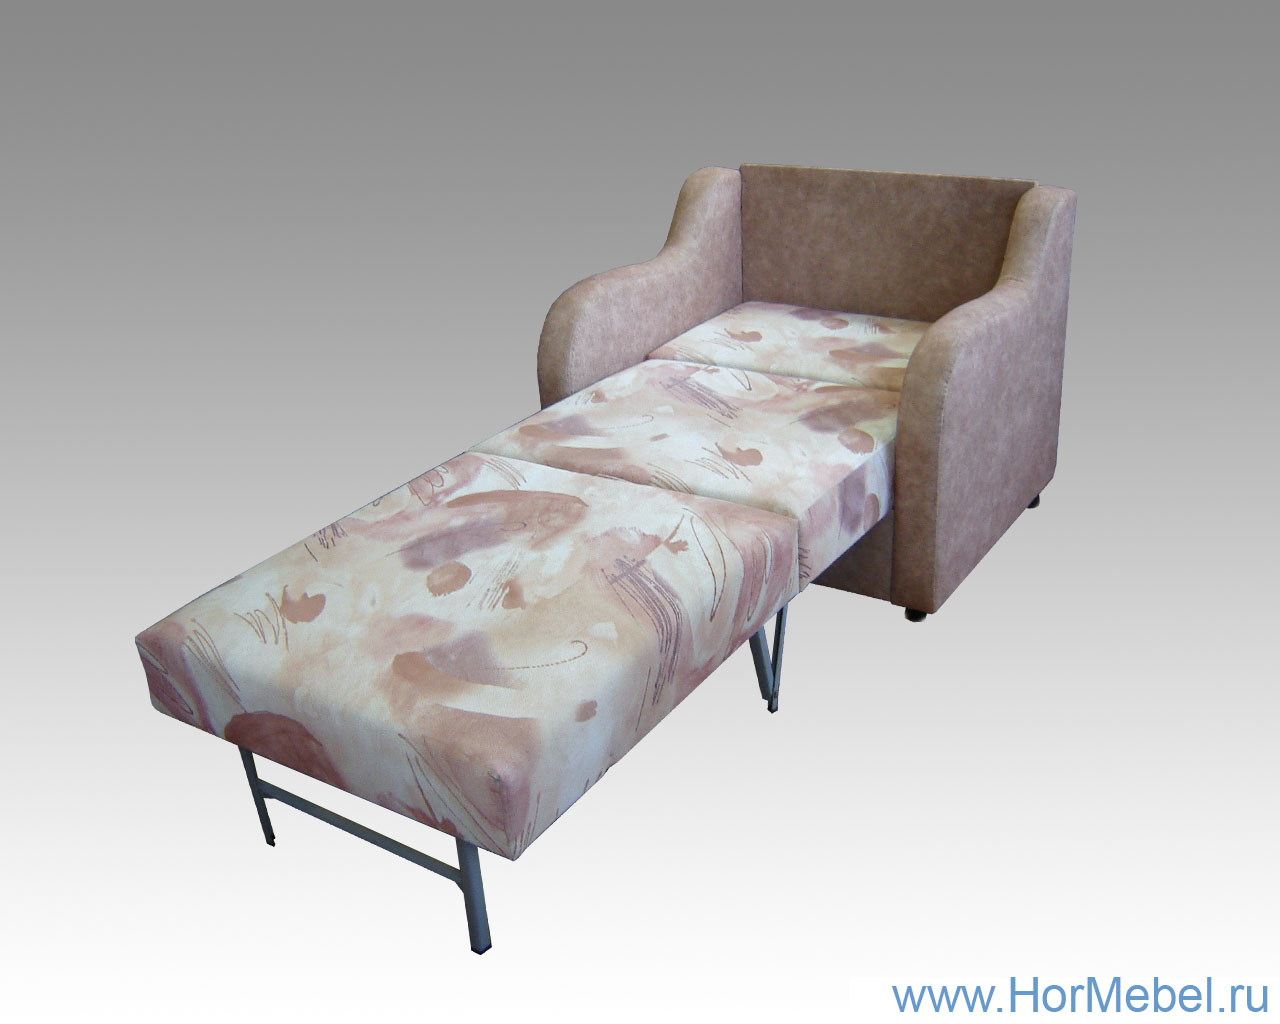 Кресло кровать с фигурной боковиной